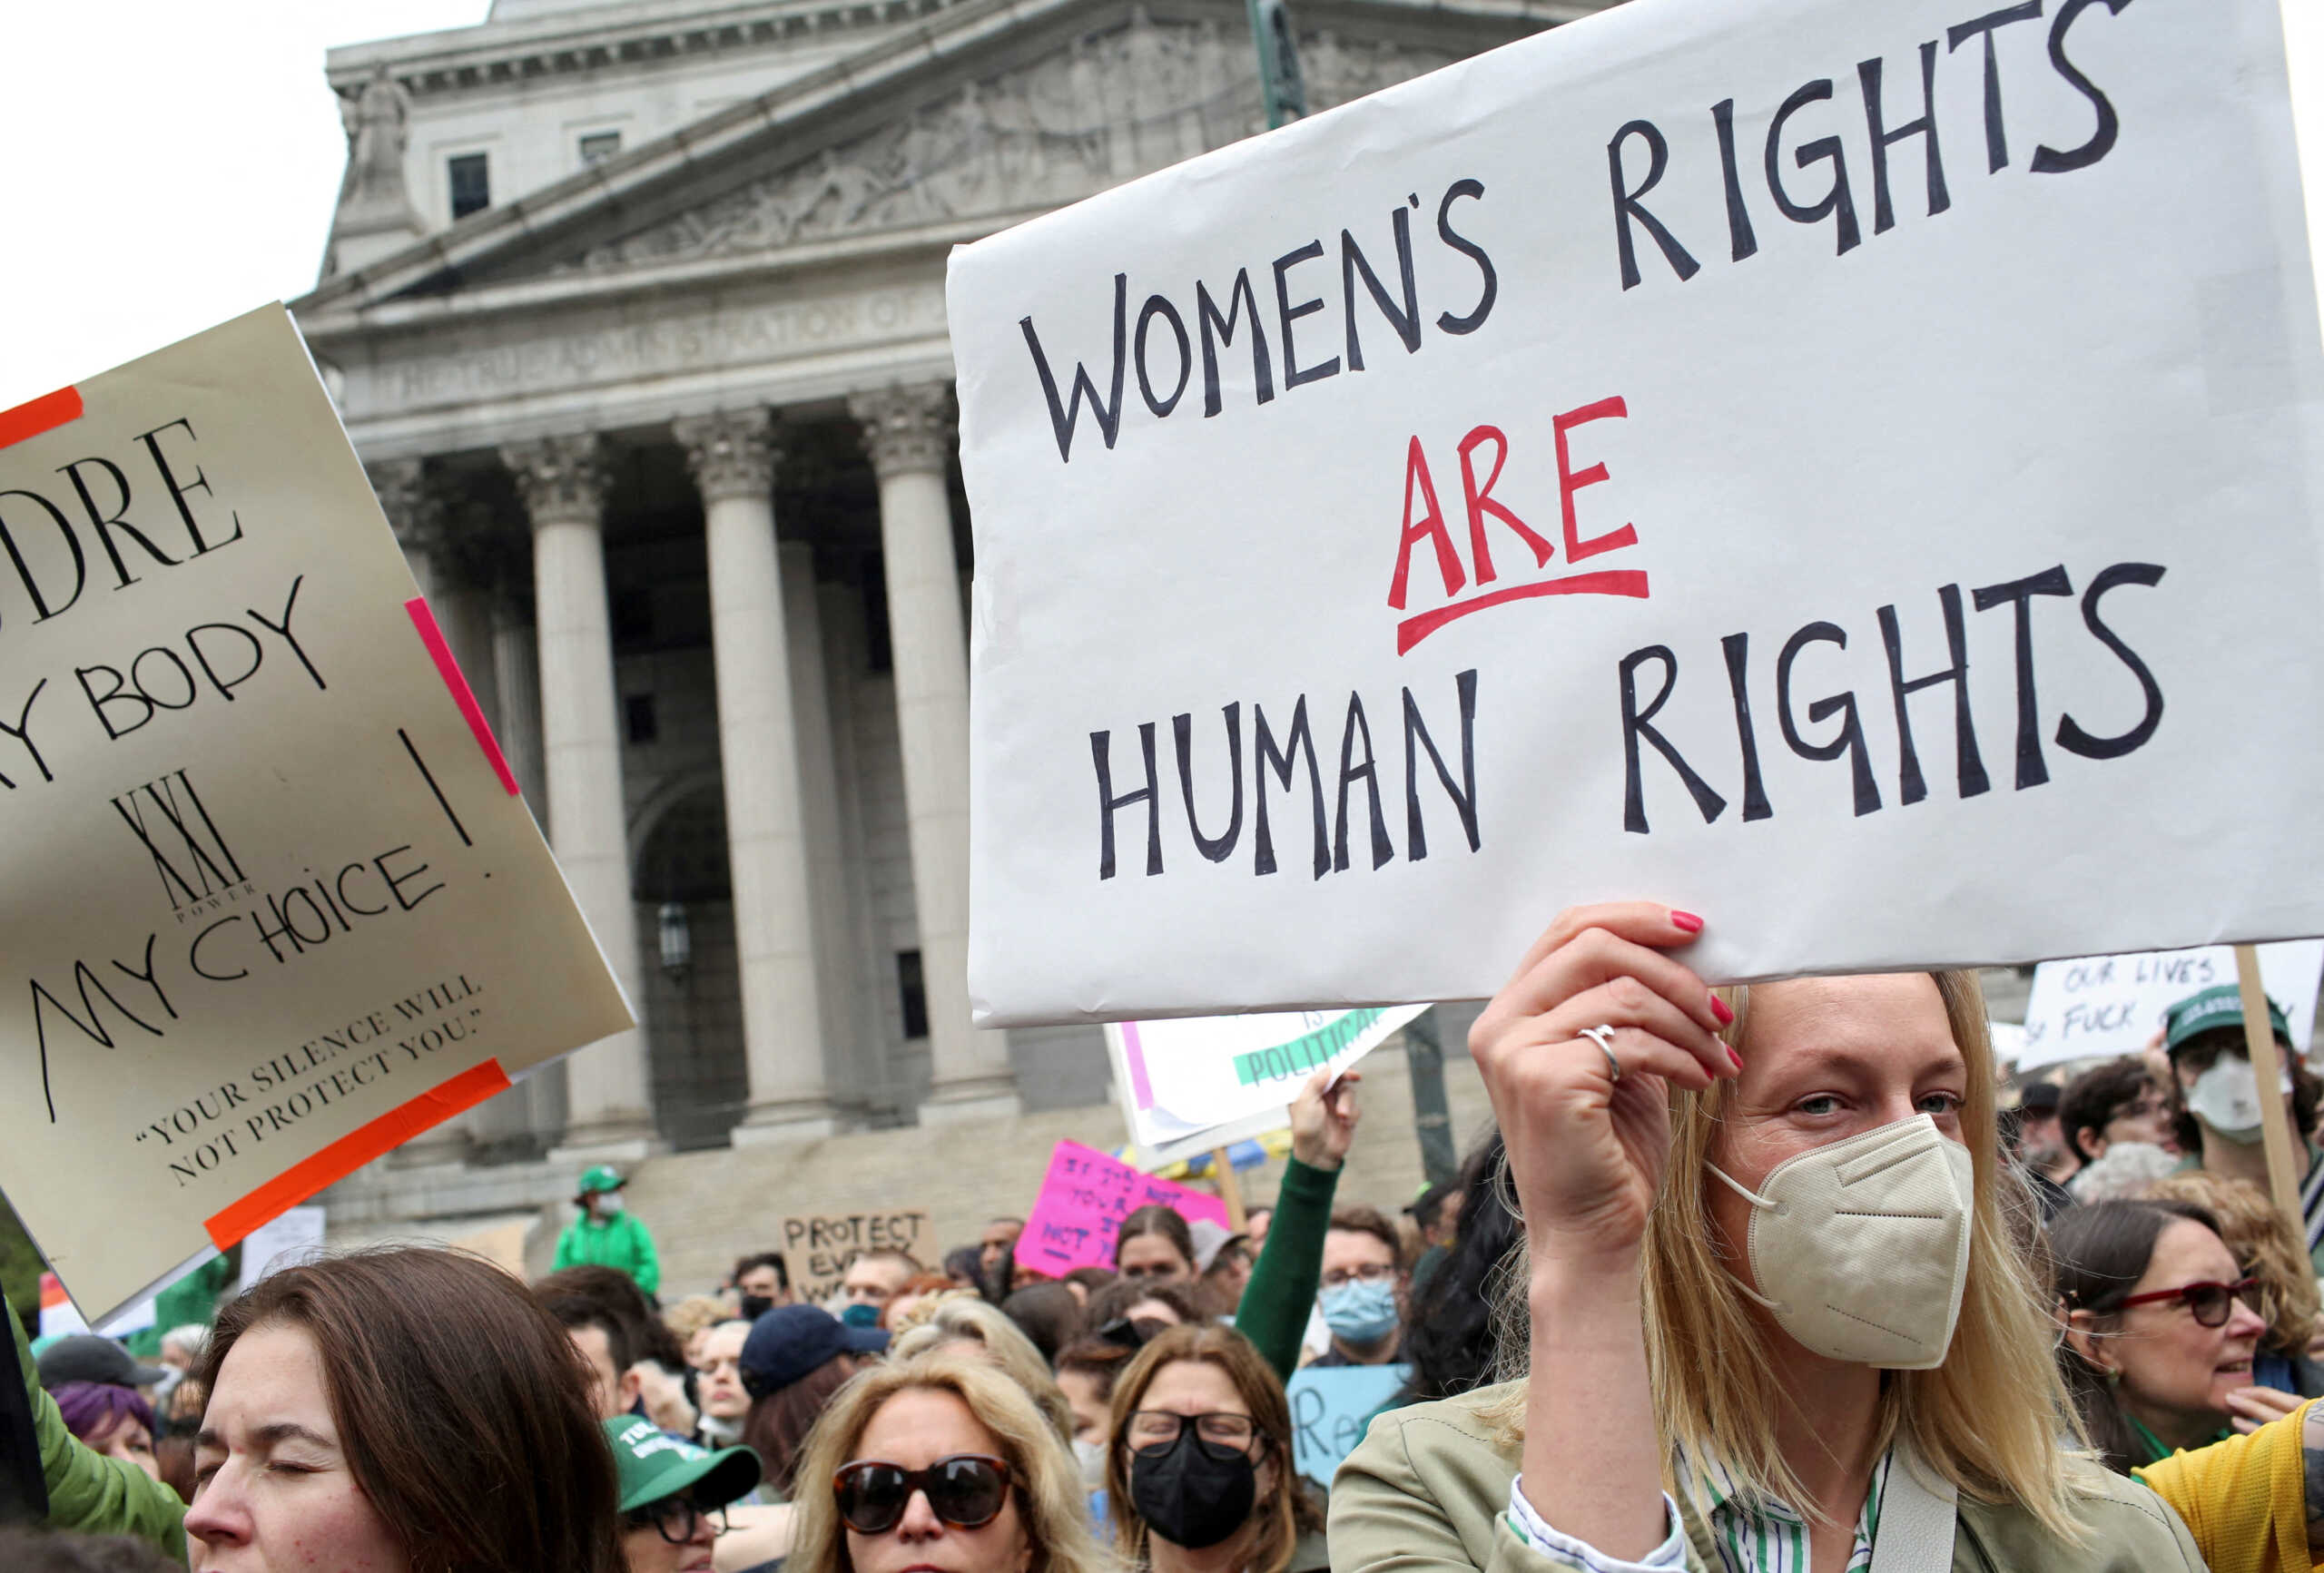 ΗΠΑ: 3 πολιτείες ανακοίνωσαν πως θα υπερασπιστούν το δικαίωμα στην άμβλωση